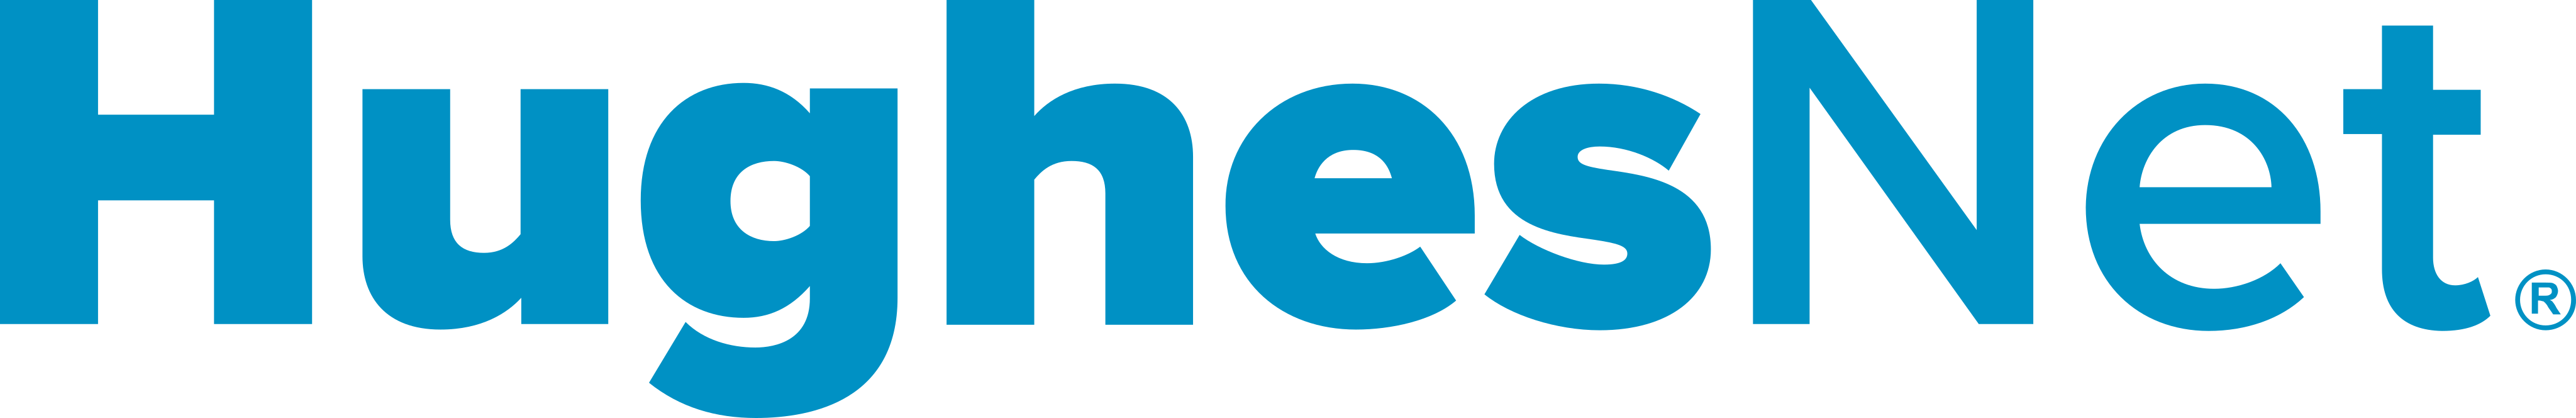 hughesnet-logo